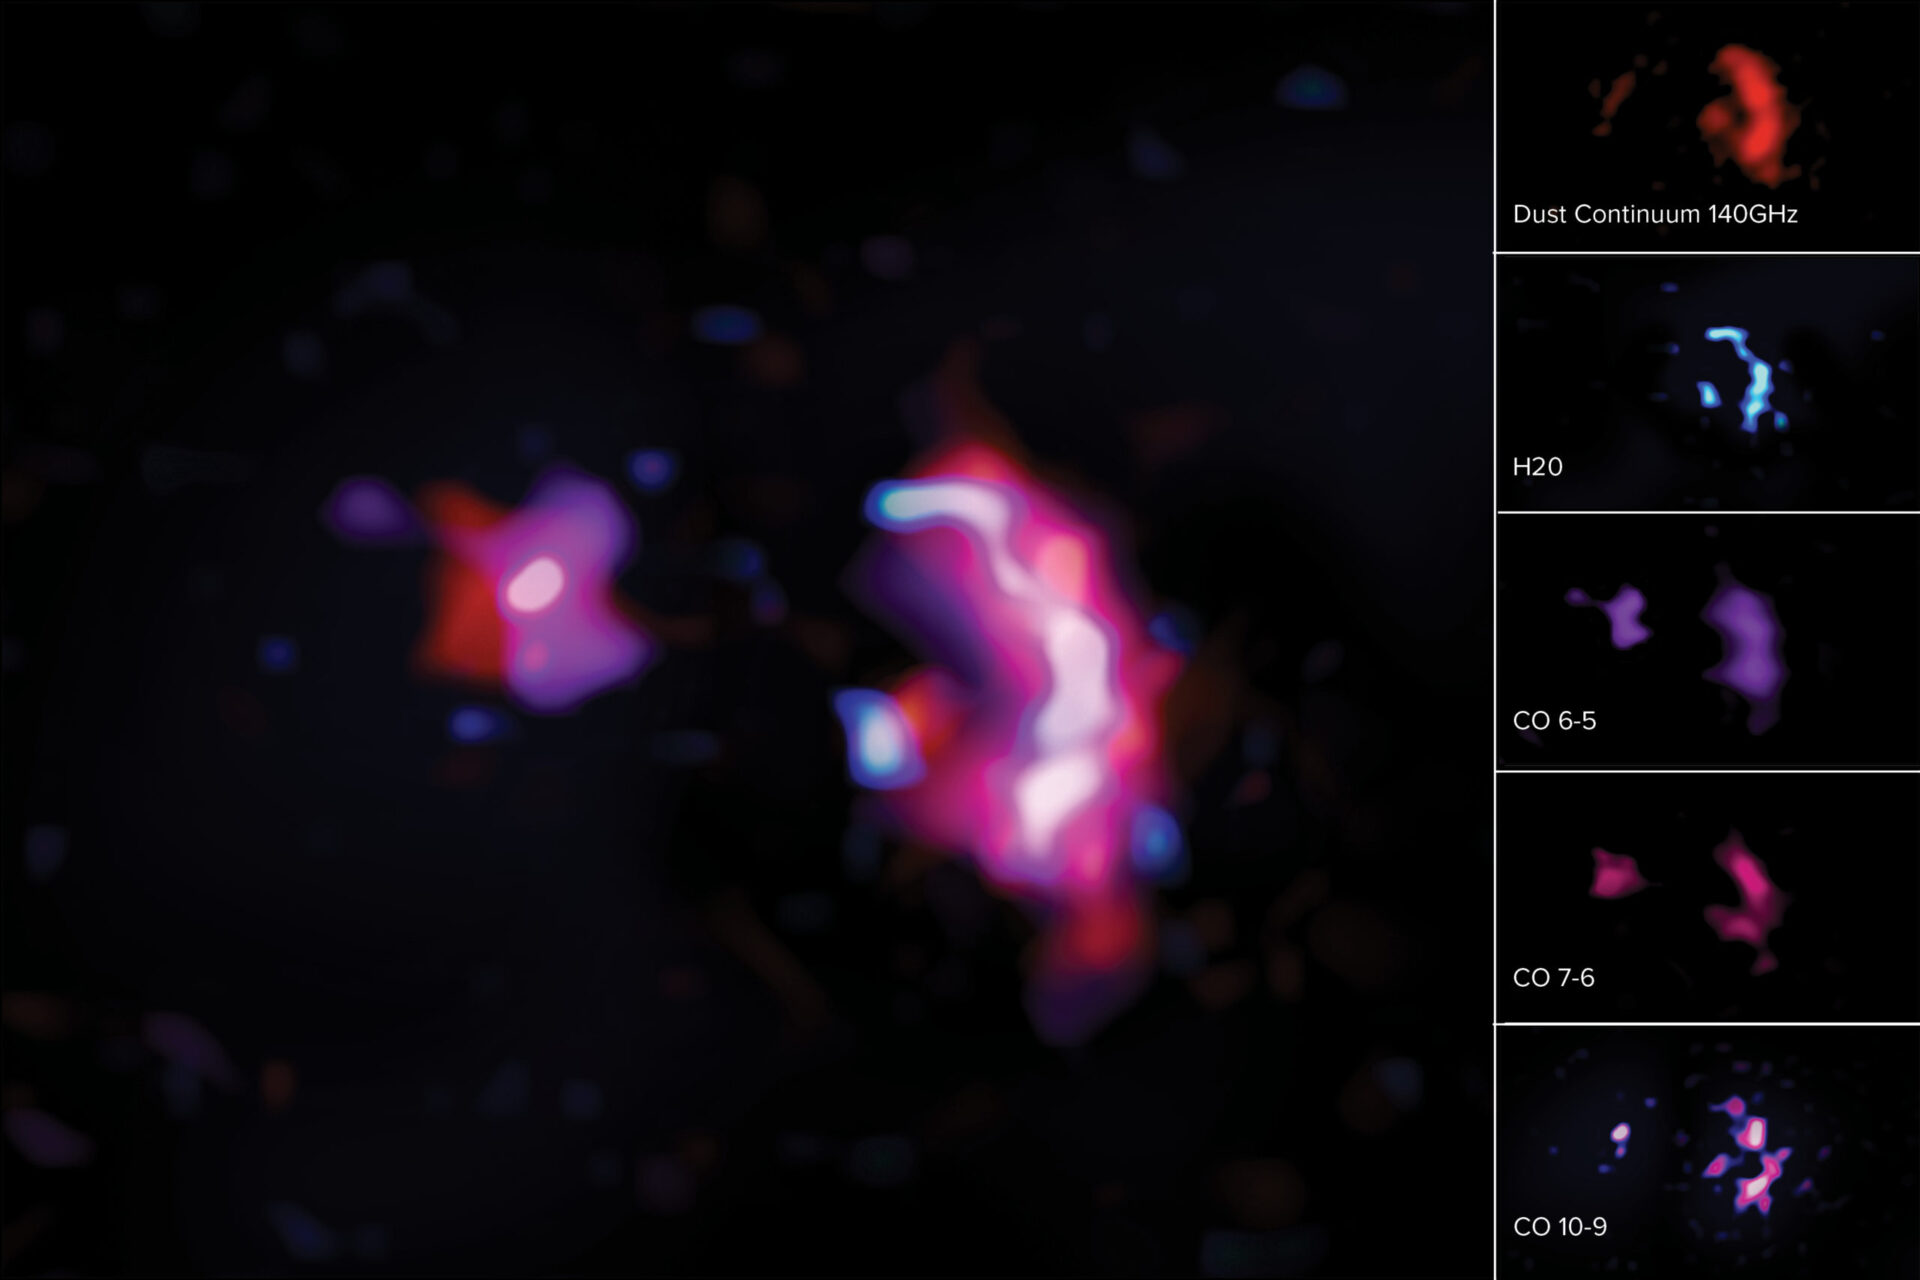 <p>Estas imágenes muestran las líneas moleculares y el continuo de polvo observados por ALMA en la pareja de jóvenes galaxias masivas jóvenes conocida como SPT0311-58. Izquierda: imagen compuesta del continuo de polvo y las líneas moleculares de H2O y CO. Derecha: continuo de polvo representado en rojo (arriba), líneas moleculares de H2O en azul (segunda imagen desde arriba), líneas moleculares de monóxido de carbono (6-5) en morado (centro), líneas moleculares de monóxido de carbono (7-6) en magenta (segunda desde abajo) y líneas moleculares de monóxido de carbono (10-9) en rosado y azul oscuro (abajo).<br />
Créditos: ALMA (ESO/NAOJ/NRAO) /S. Dagnello (NRAO)</p>
